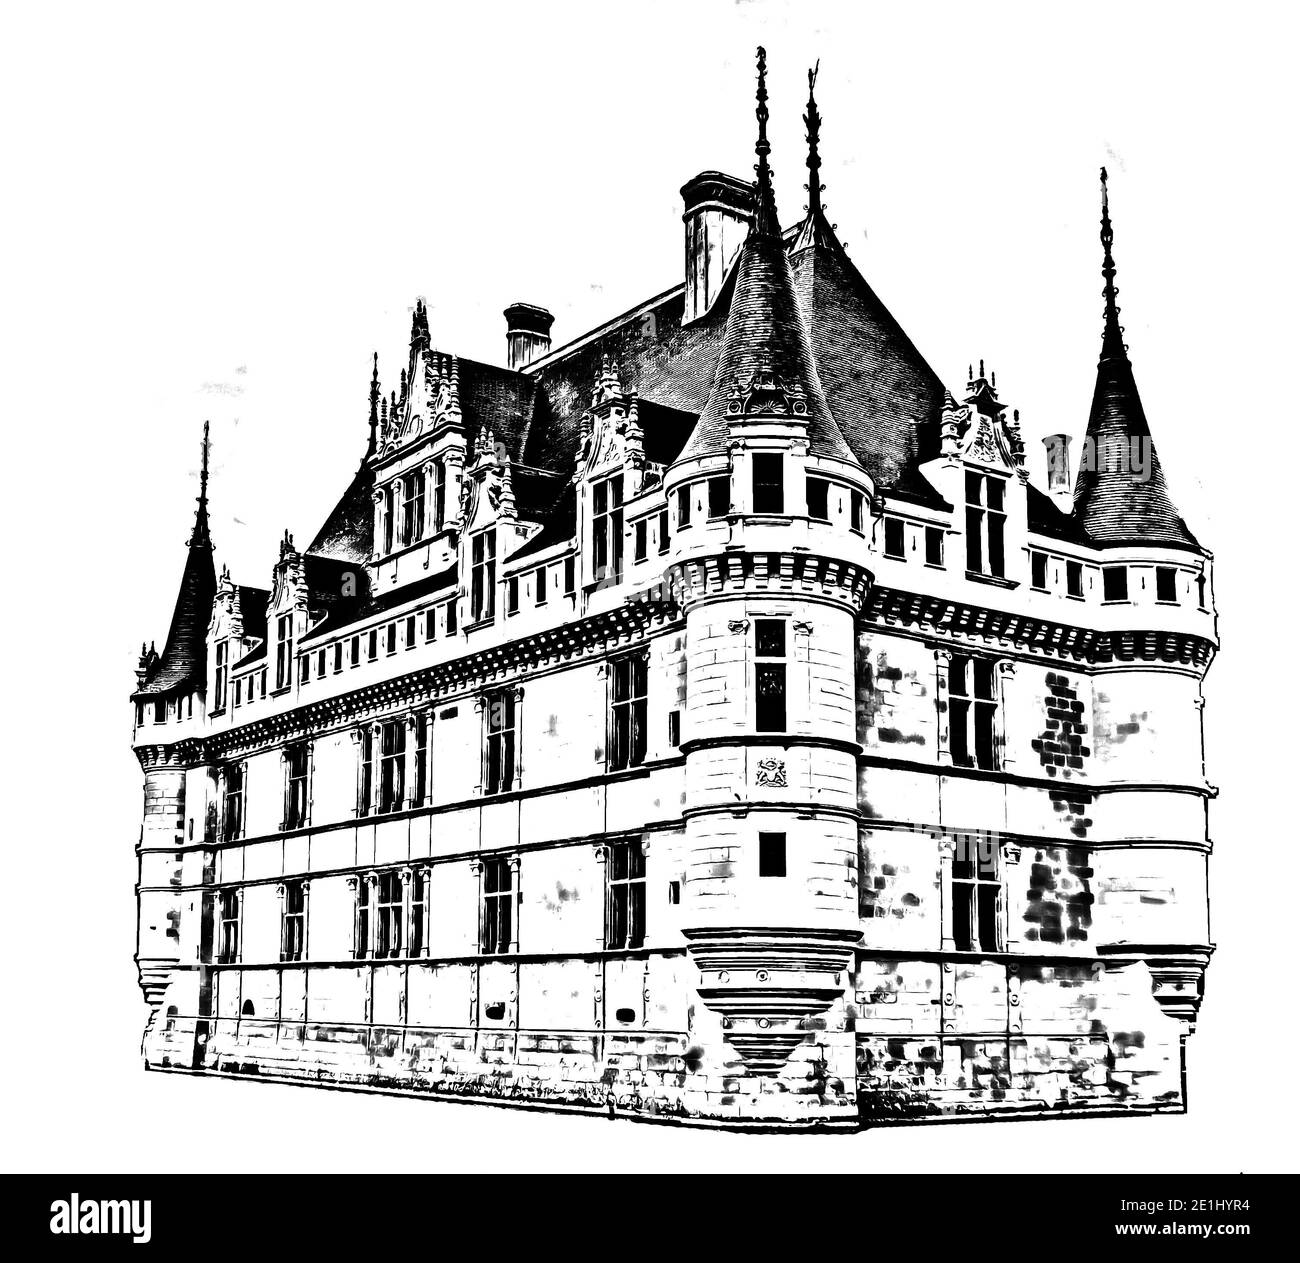 Château graphique Azay le Rideau (Château d'Azay le Rideau) sur fond blanc, Indre et Loire, Vallée de la Loire, France. Style de dessin au crayon. Banque D'Images